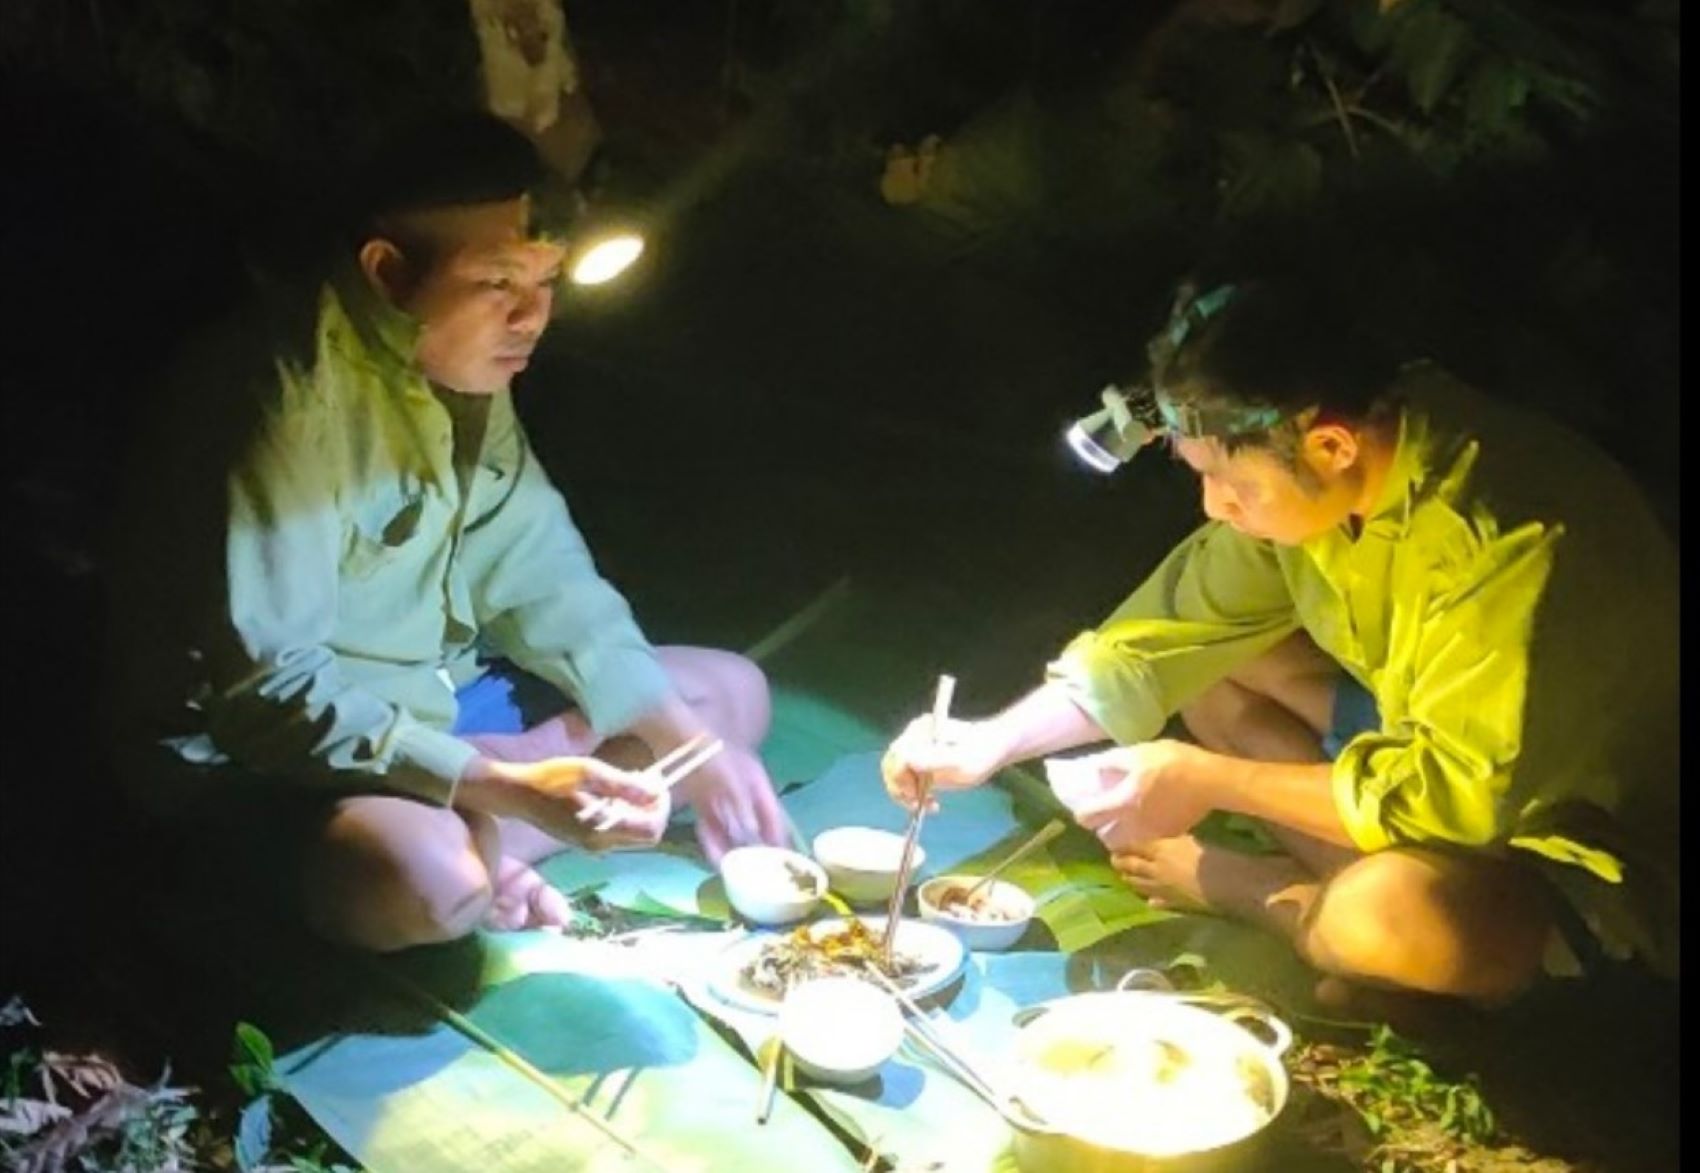 Đội đèn ăn cơm, là hình ảnh quen thuộc với anh em bảo vệ rừng tại Trạm số 2 vào những lúc tuần tra ban đêm. Ảnh: Phan Ấn.